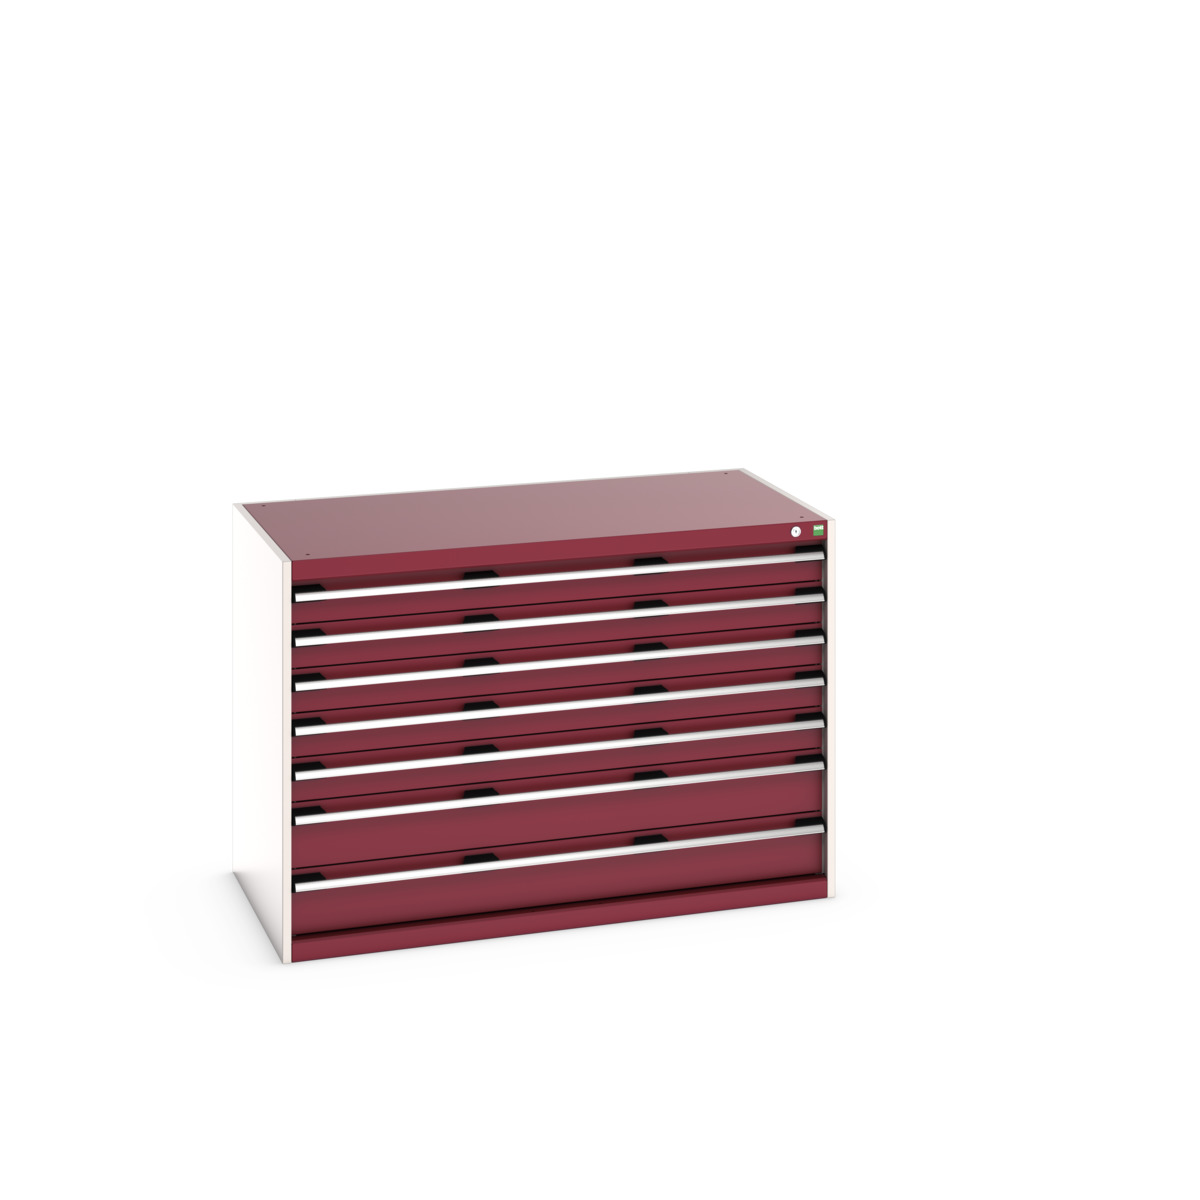 40030087.24V - cubio drawer cabinet